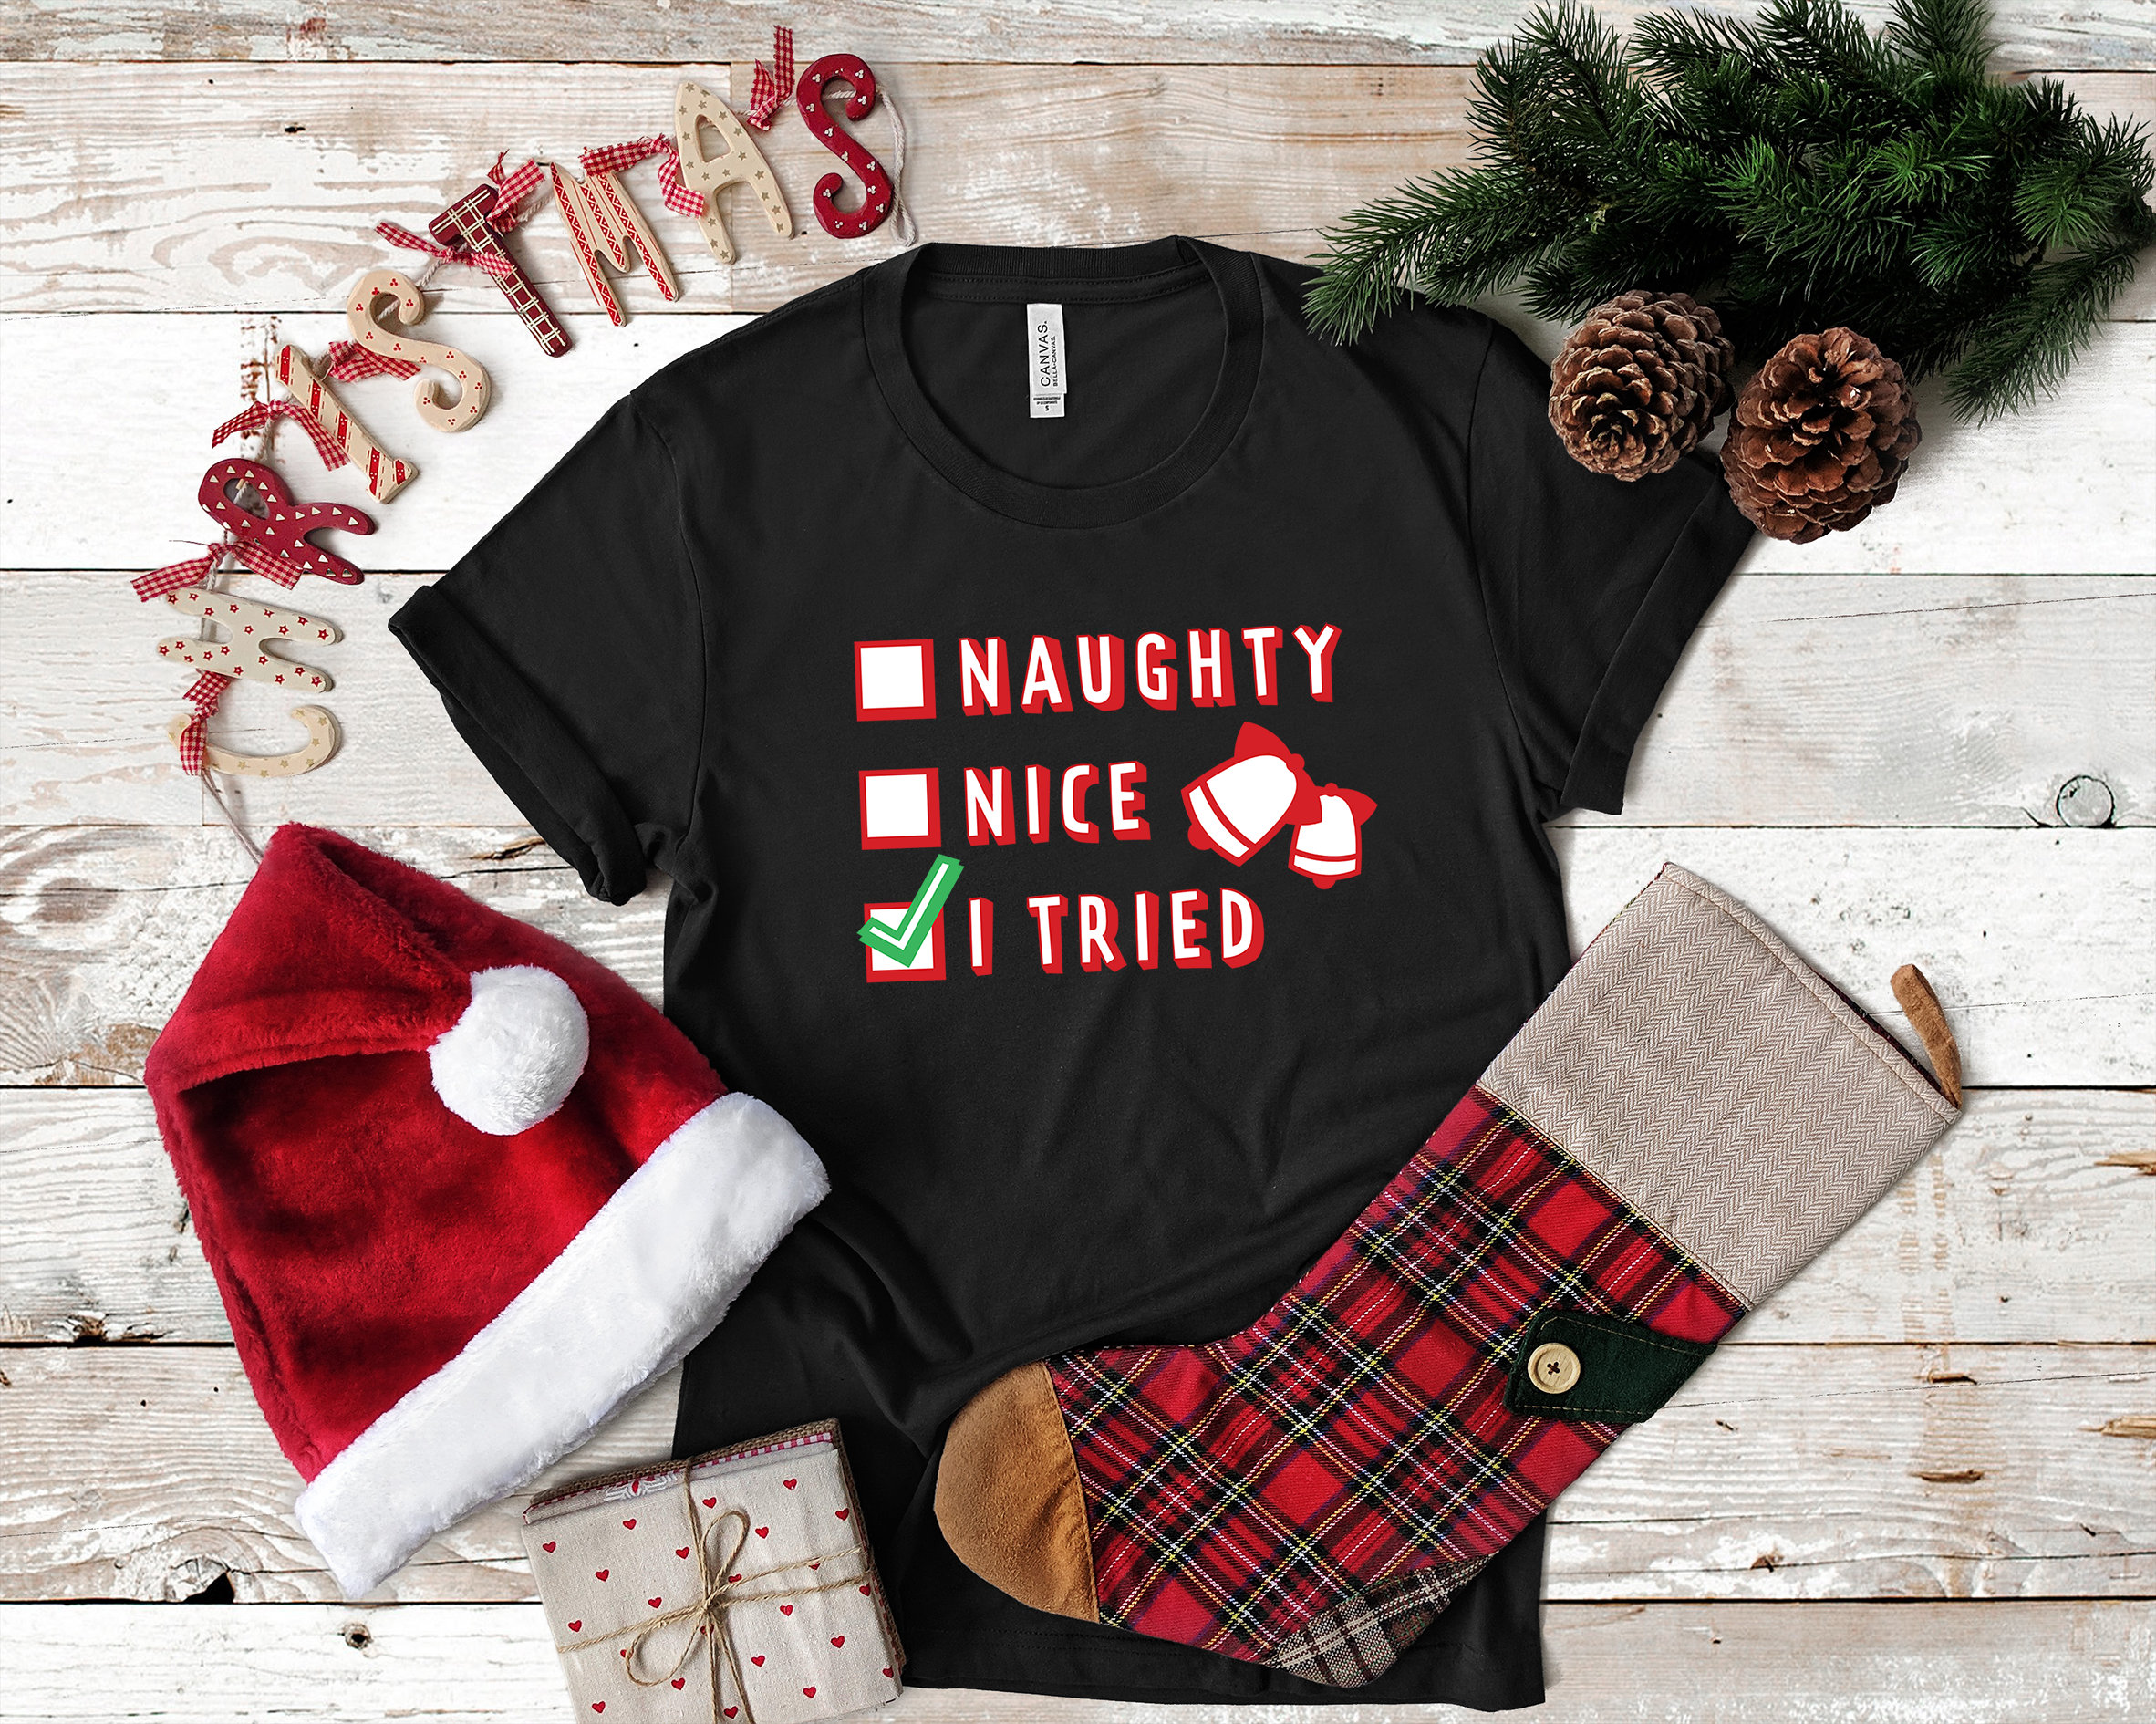 Christmas tshirt, Holiday tshirt, Funny Christmas tshirt, Christmas ...